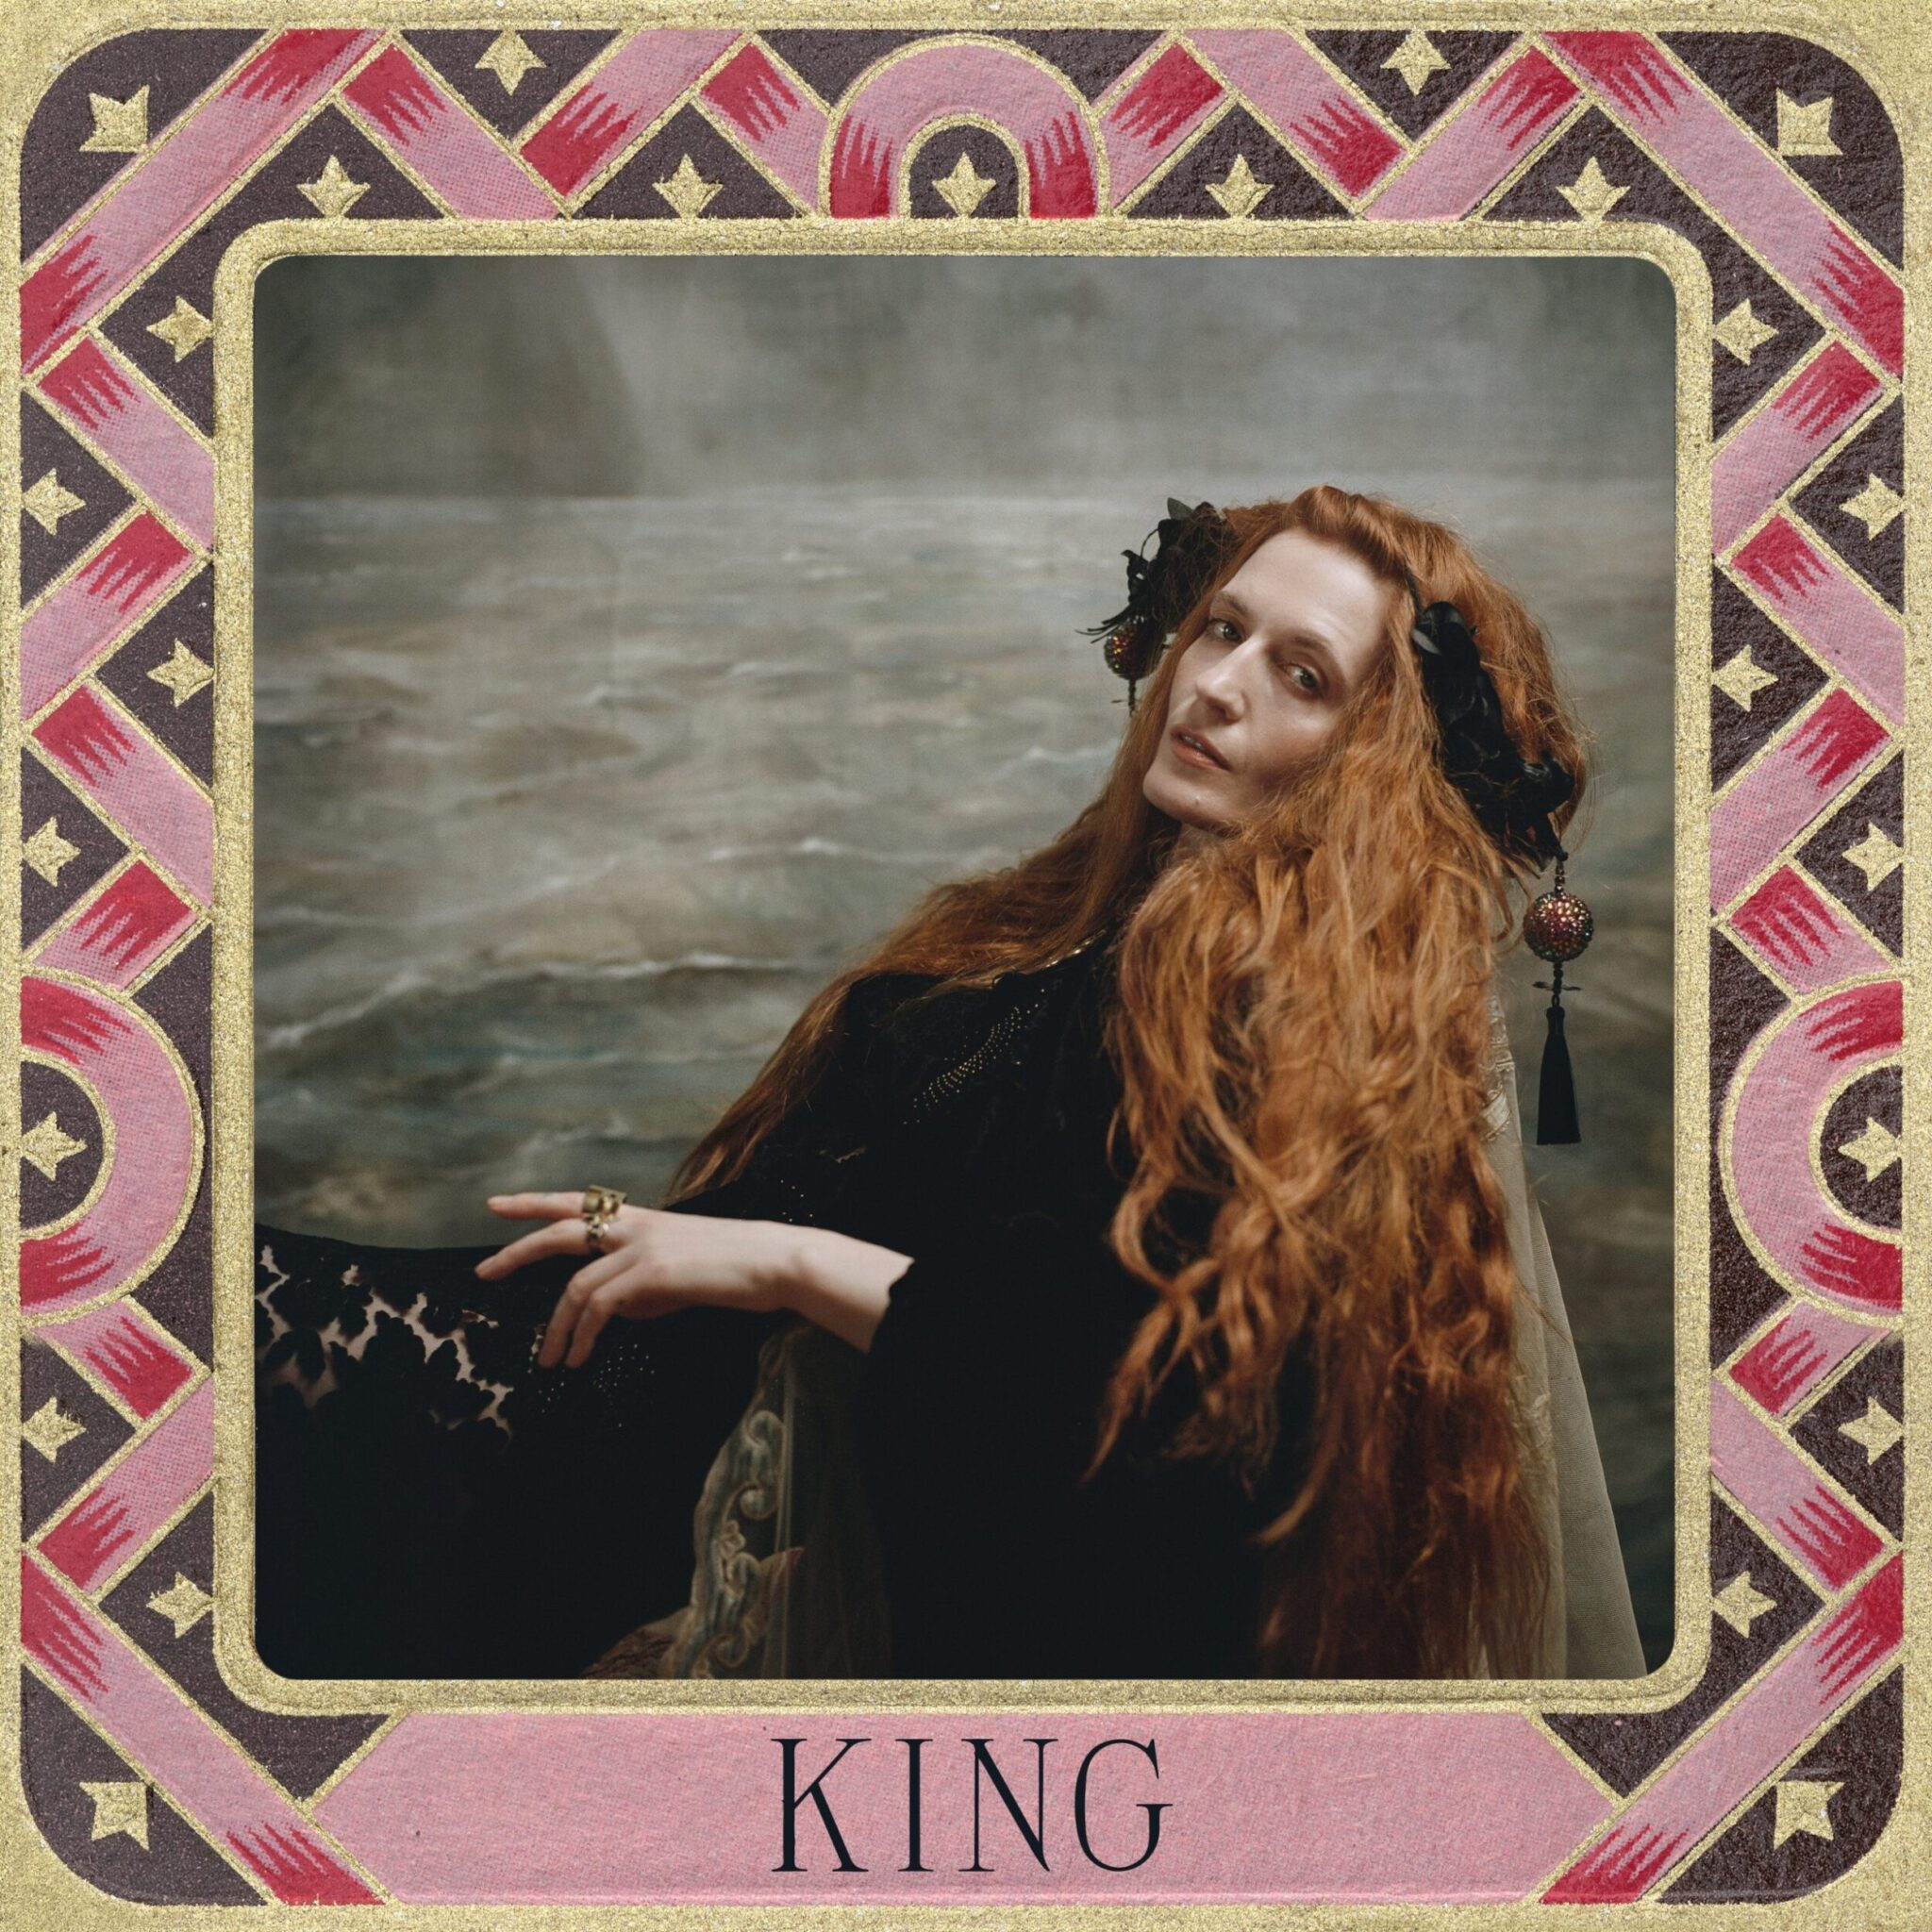 La pochette de King, le nouveau single de Florence + the Machine sorti le 23 février 2022.